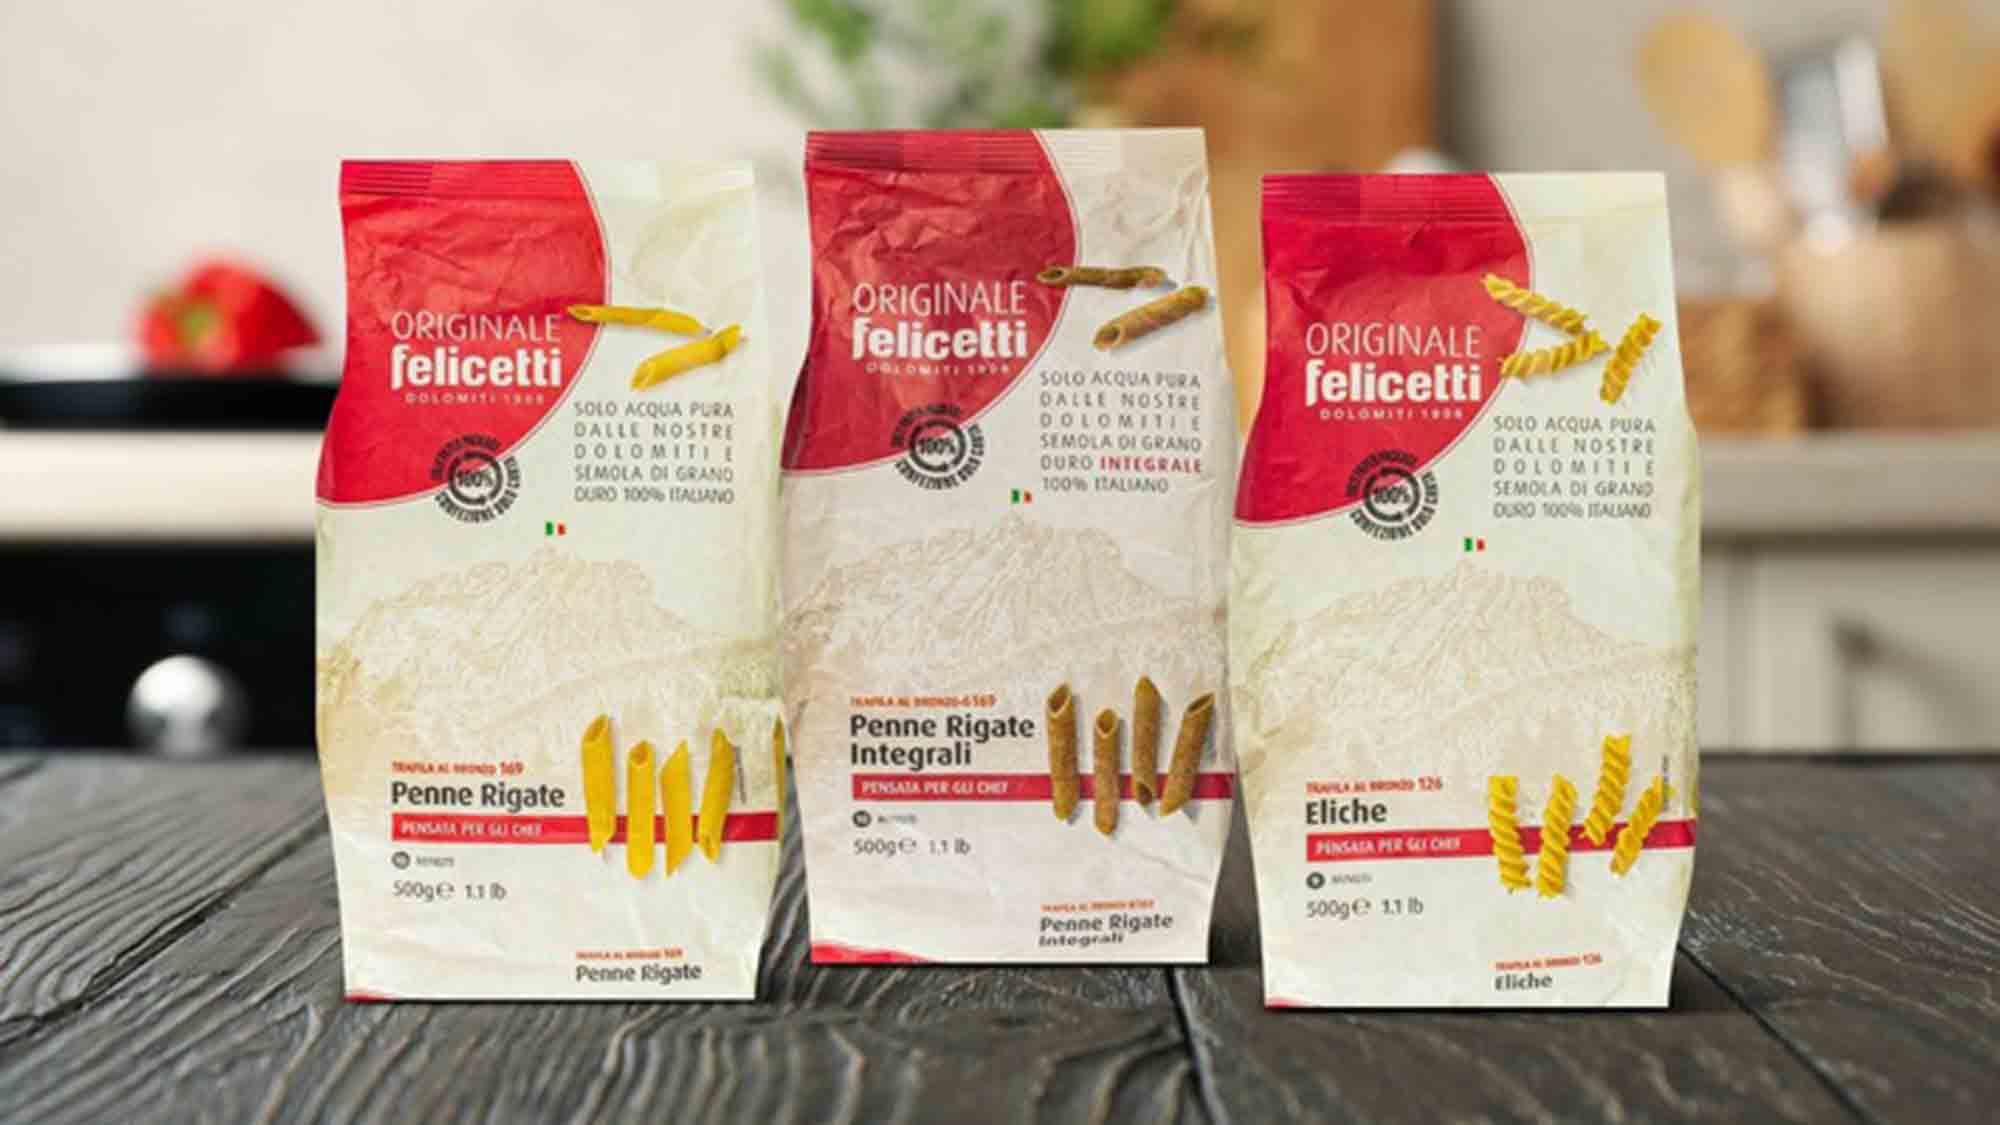 Italienisch, nachhaltig, gut: Pasta Felicetti aus den Dolomiten bei Kaufland